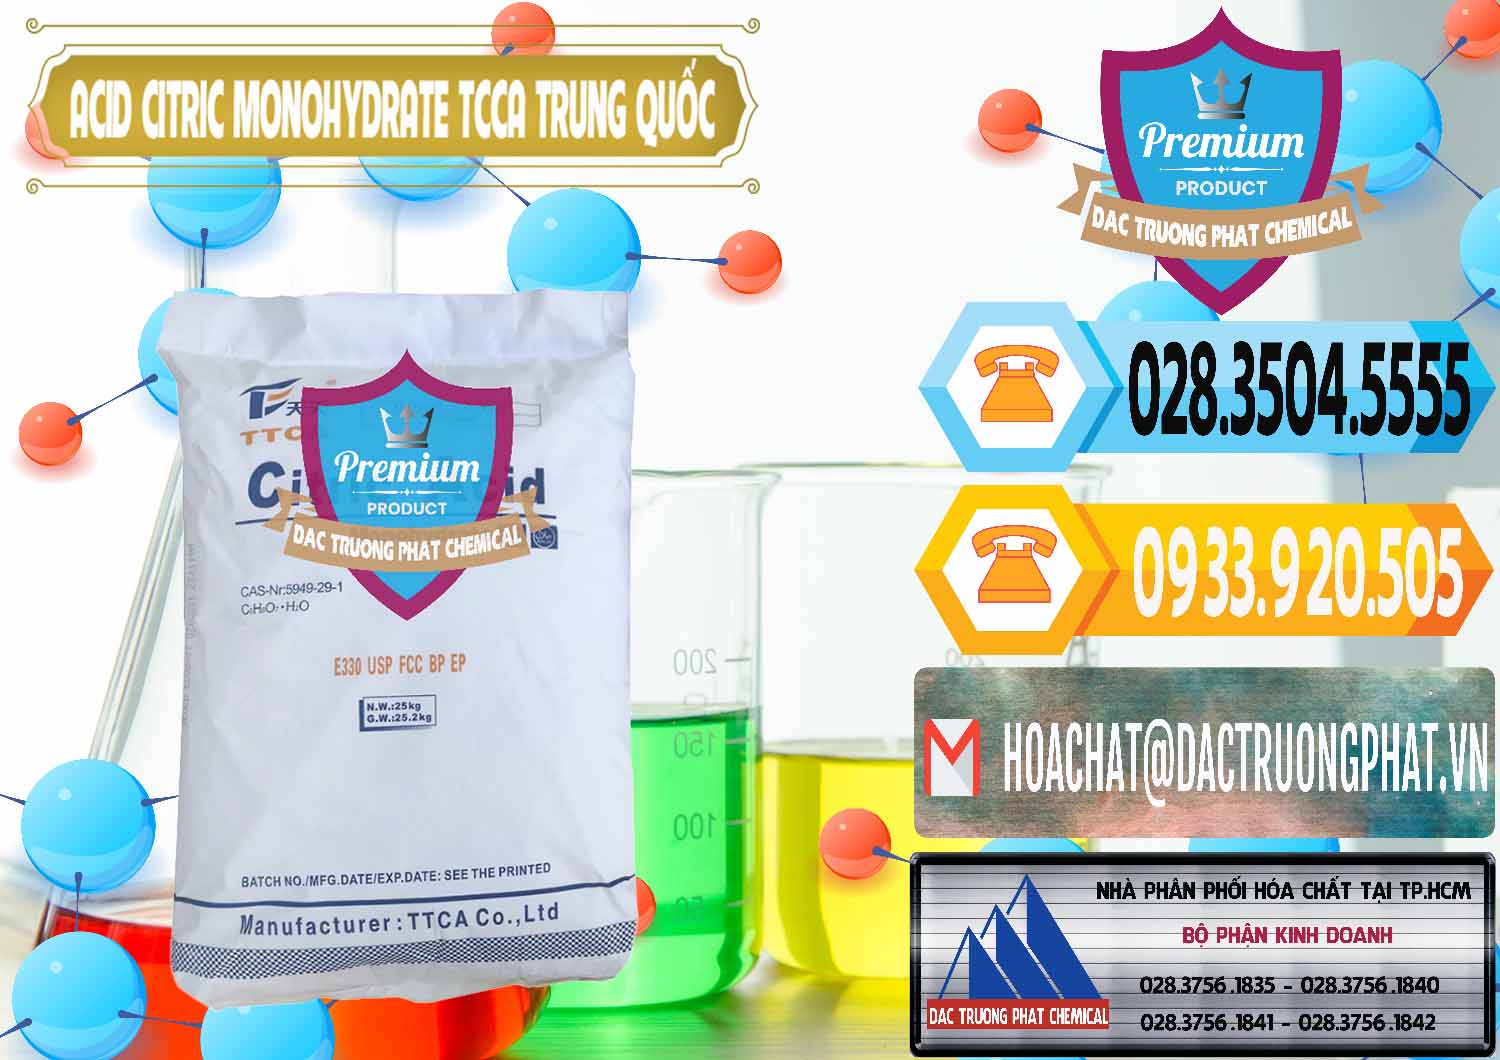 Cty bán và phân phối Acid Citric - Axit Citric Monohydrate TCCA Trung Quốc China - 0441 - Đơn vị chuyên nhập khẩu ( phân phối ) hóa chất tại TP.HCM - hoachattayrua.net